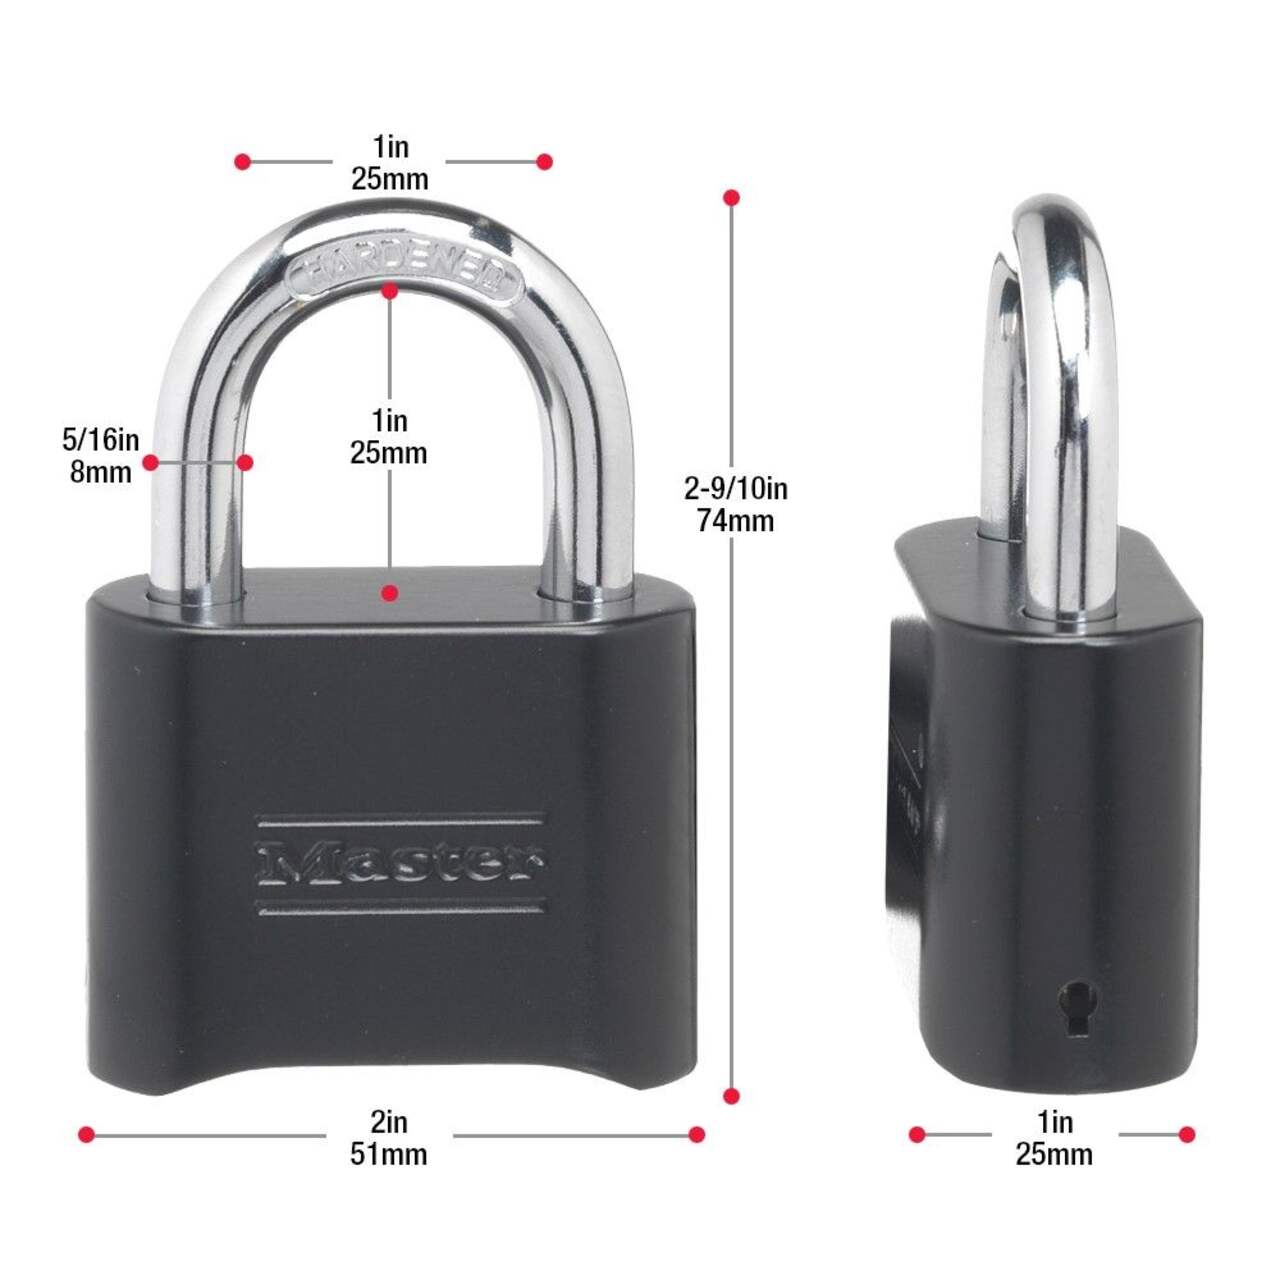 Cadenas à combinaison CHIFFRES personnalisable Master Lock #1534DBLK 64mm,  Combinaison avec Chiffres